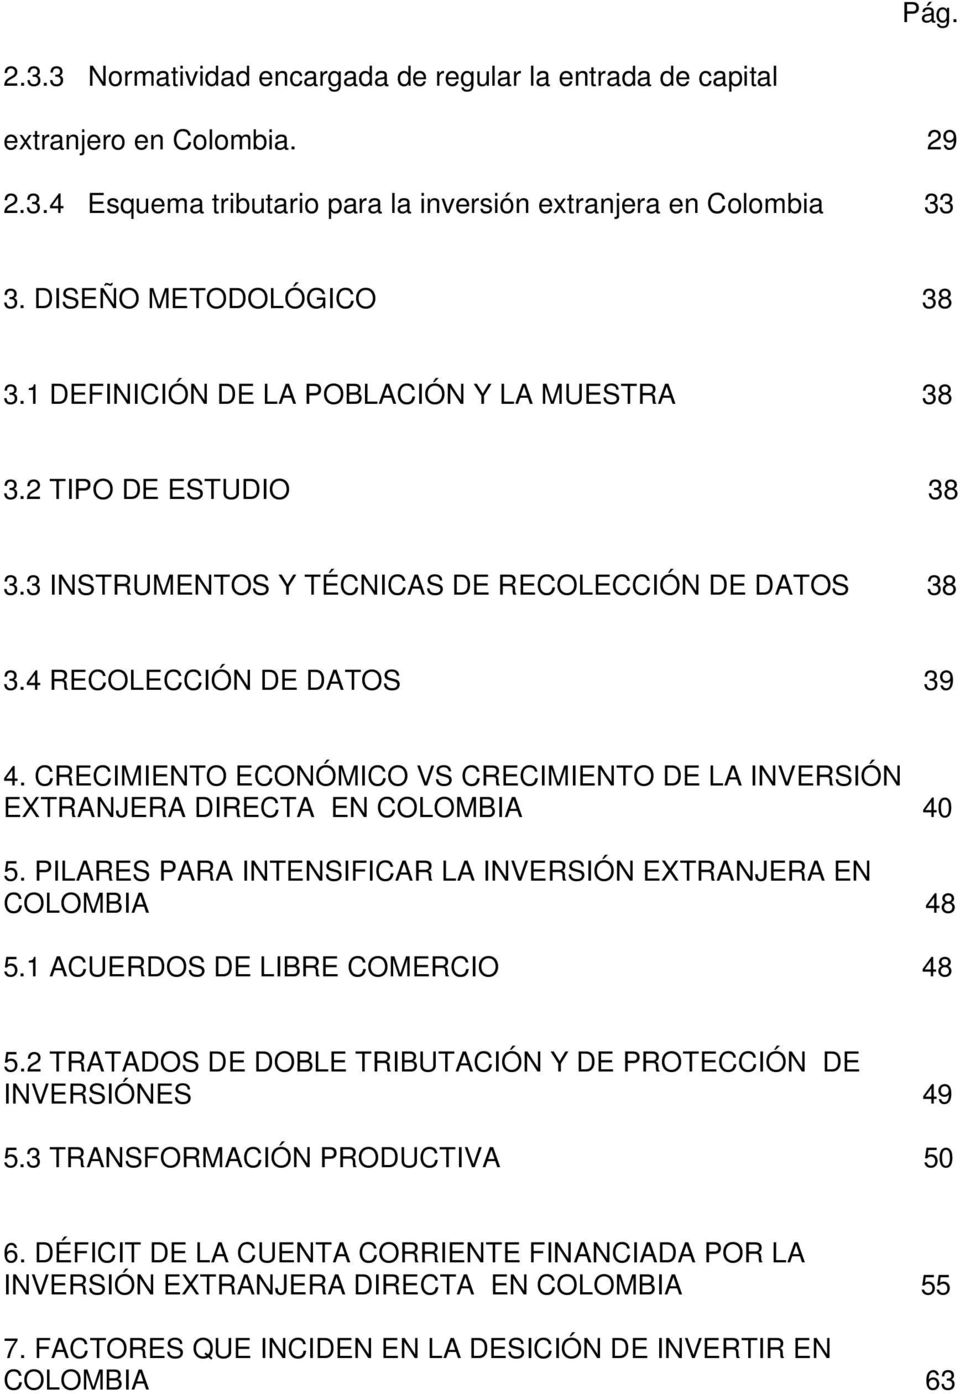 CRECIMIENTO ECONÓMICO VS CRECIMIENTO DE LA INVERSIÓN EXTRANJERA DIRECTA EN COLOMBIA 40 5. PILARES PARA INTENSIFICAR LA INVERSIÓN EXTRANJERA EN COLOMBIA 48 5.1 ACUERDOS DE LIBRE COMERCIO 48 5.